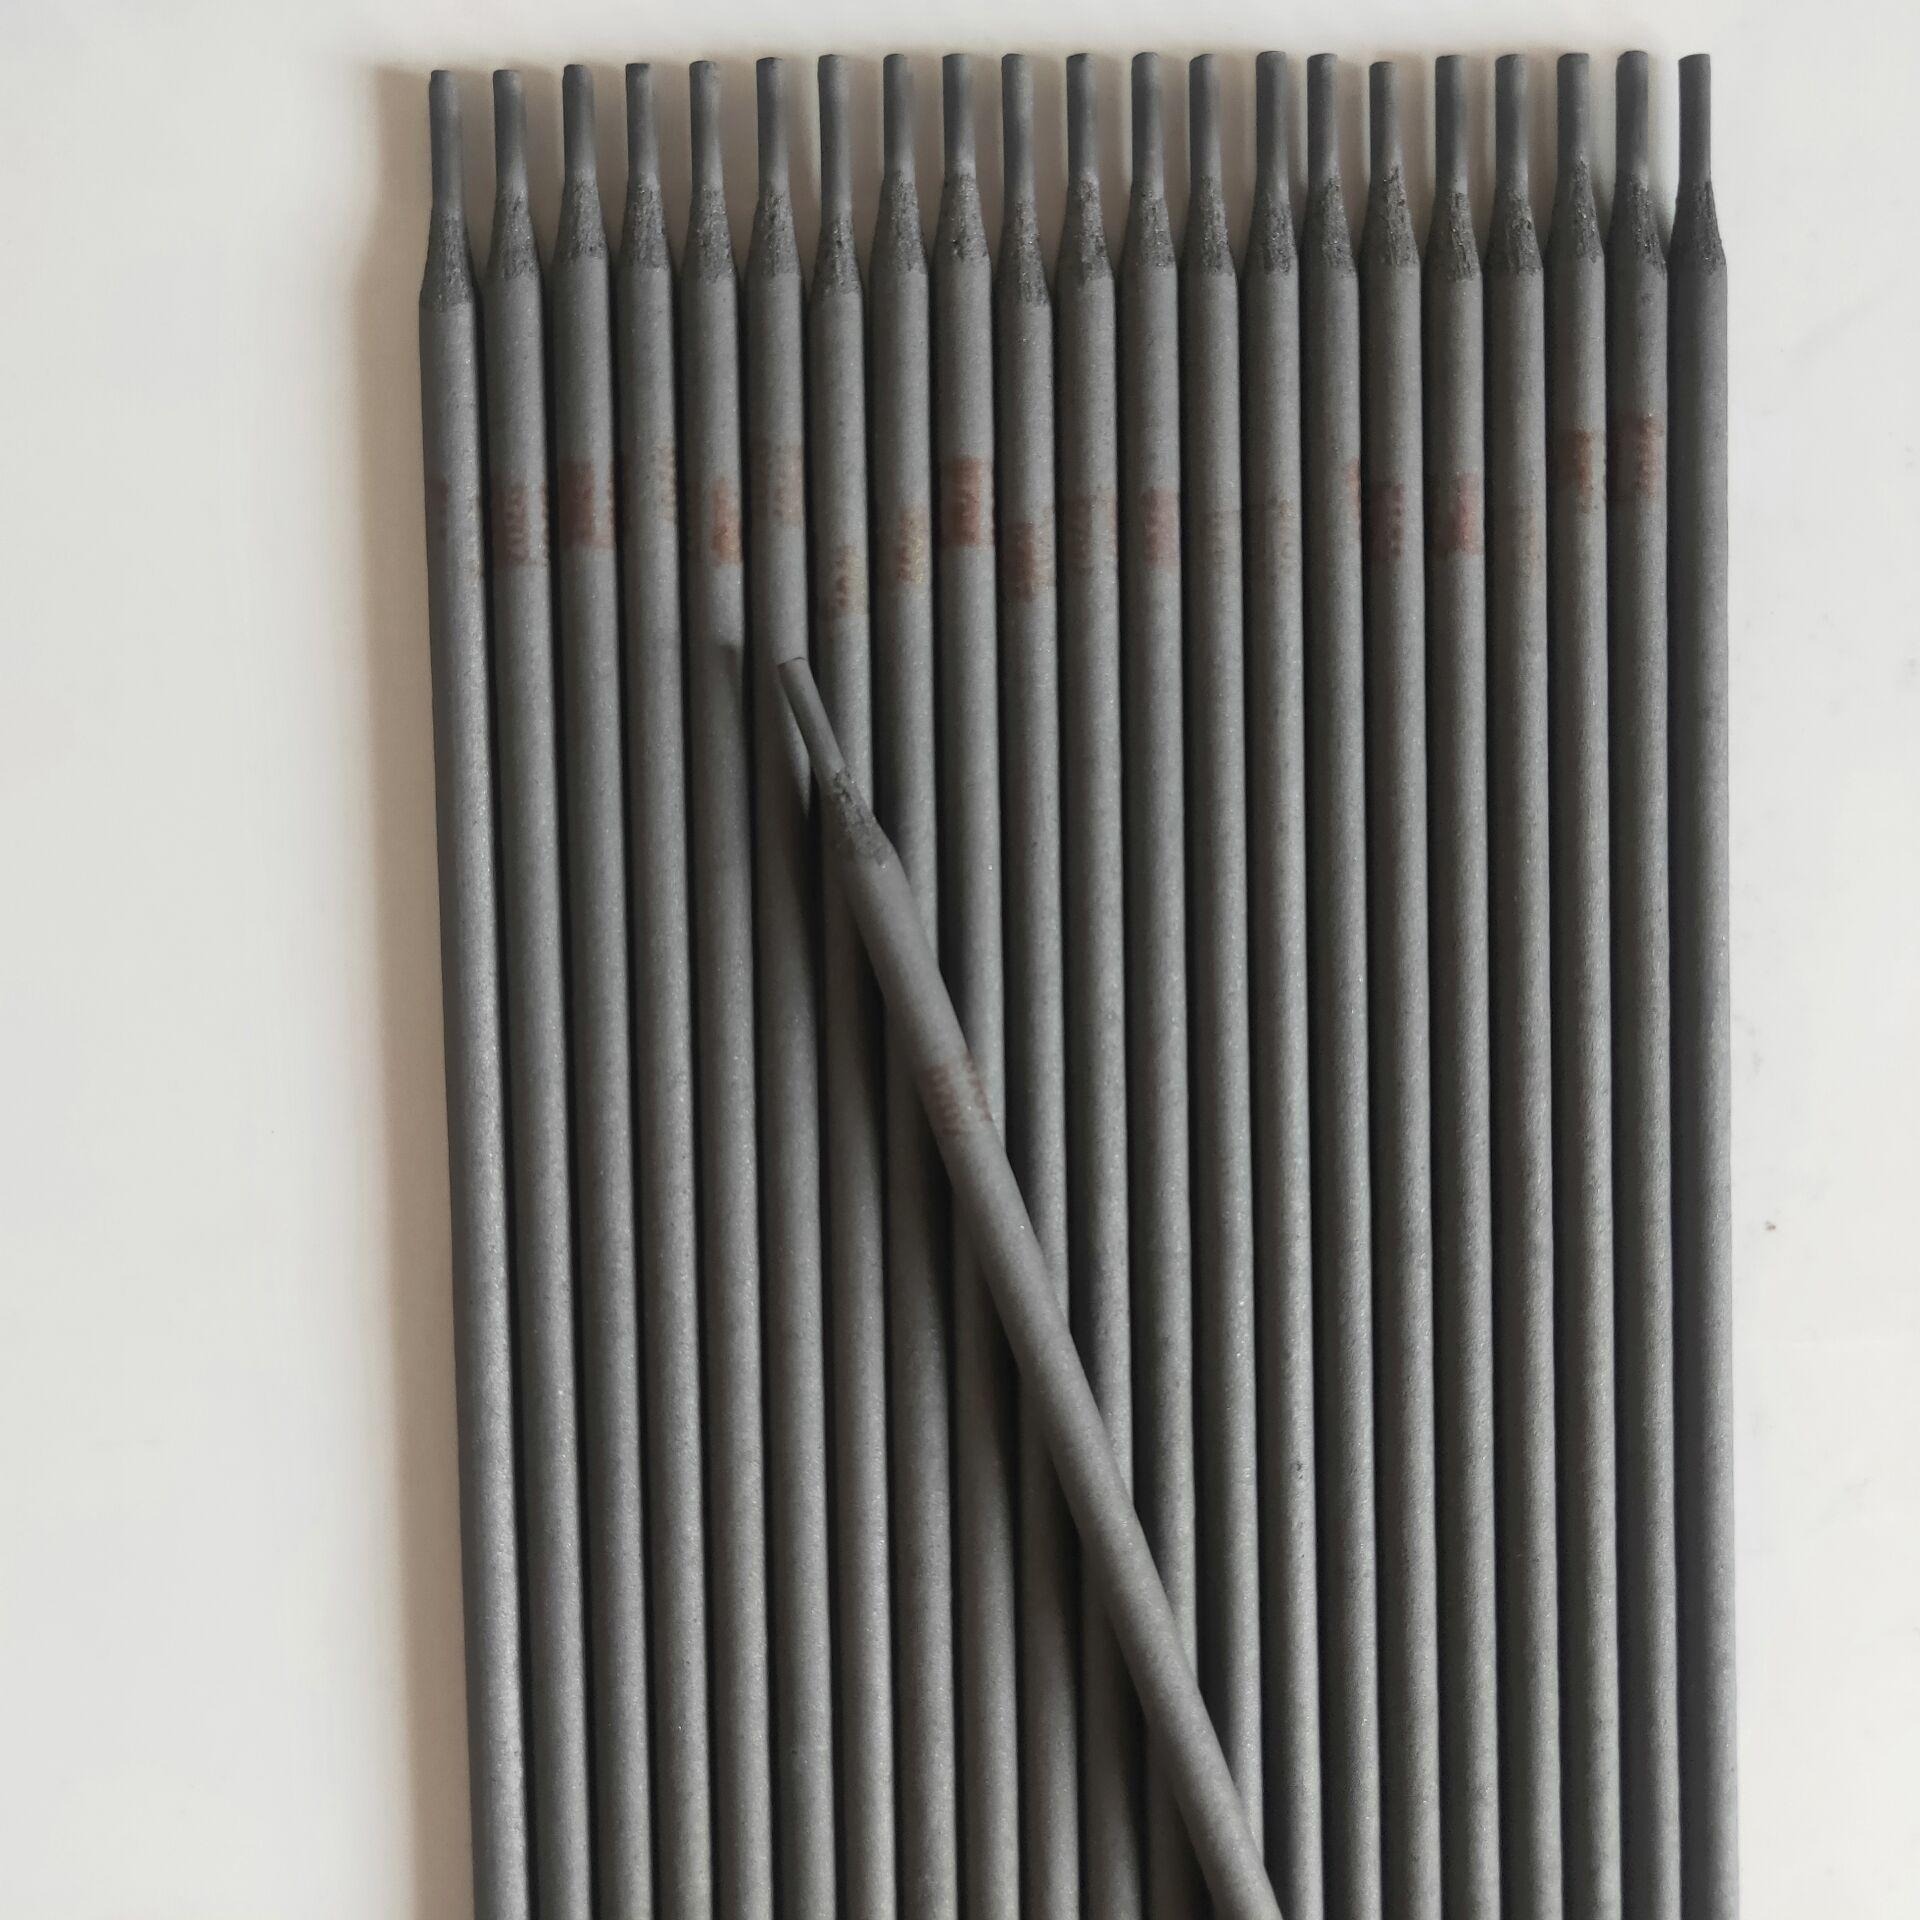 贝达耐高温耐磨焊条 D708钼铬硼(MO-CR-B)合金耐磨堆焊焊条 D708耐磨焊条